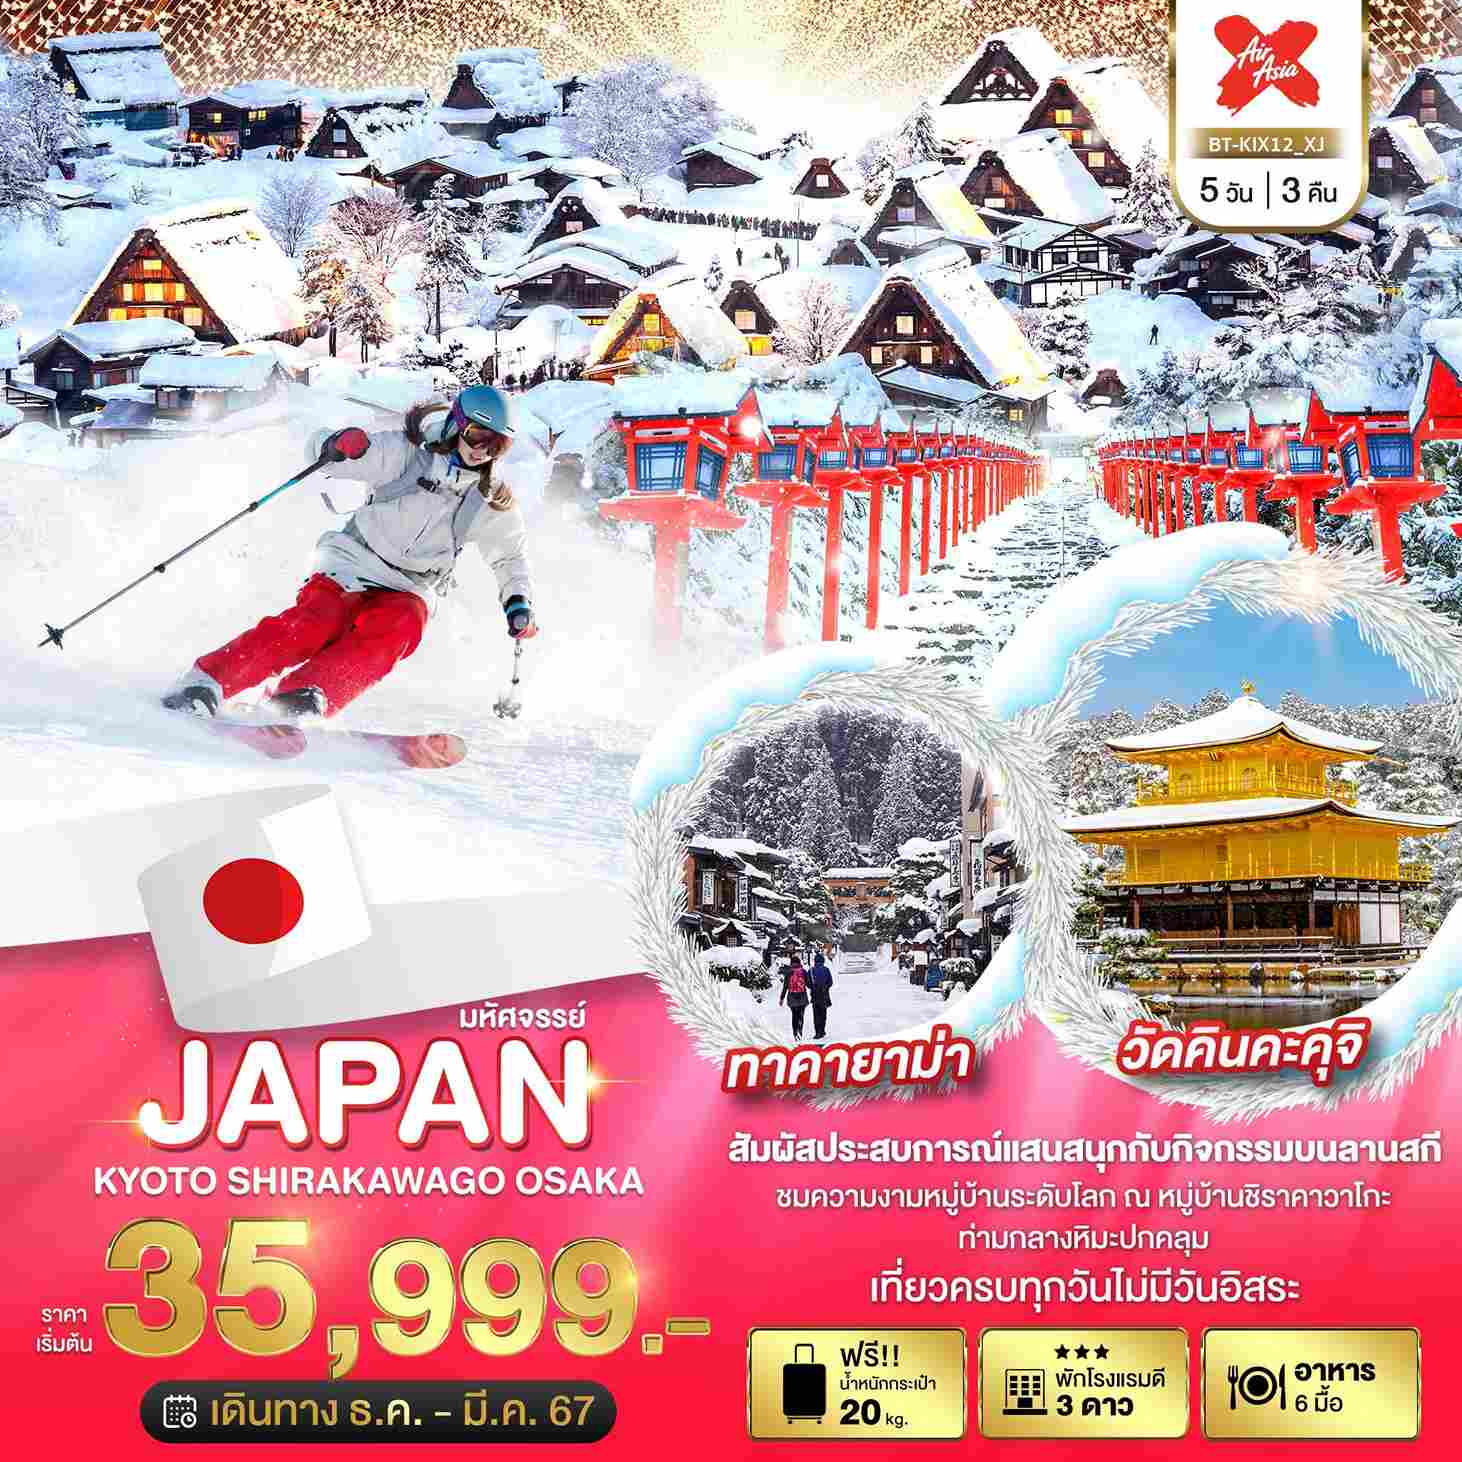 ทัวร์ญี่ปุ่น AJP67-36 มหัศจรรย์ JAPAN เกียวโต ชิราคาวาโกะ โอซาก้า(010367)  